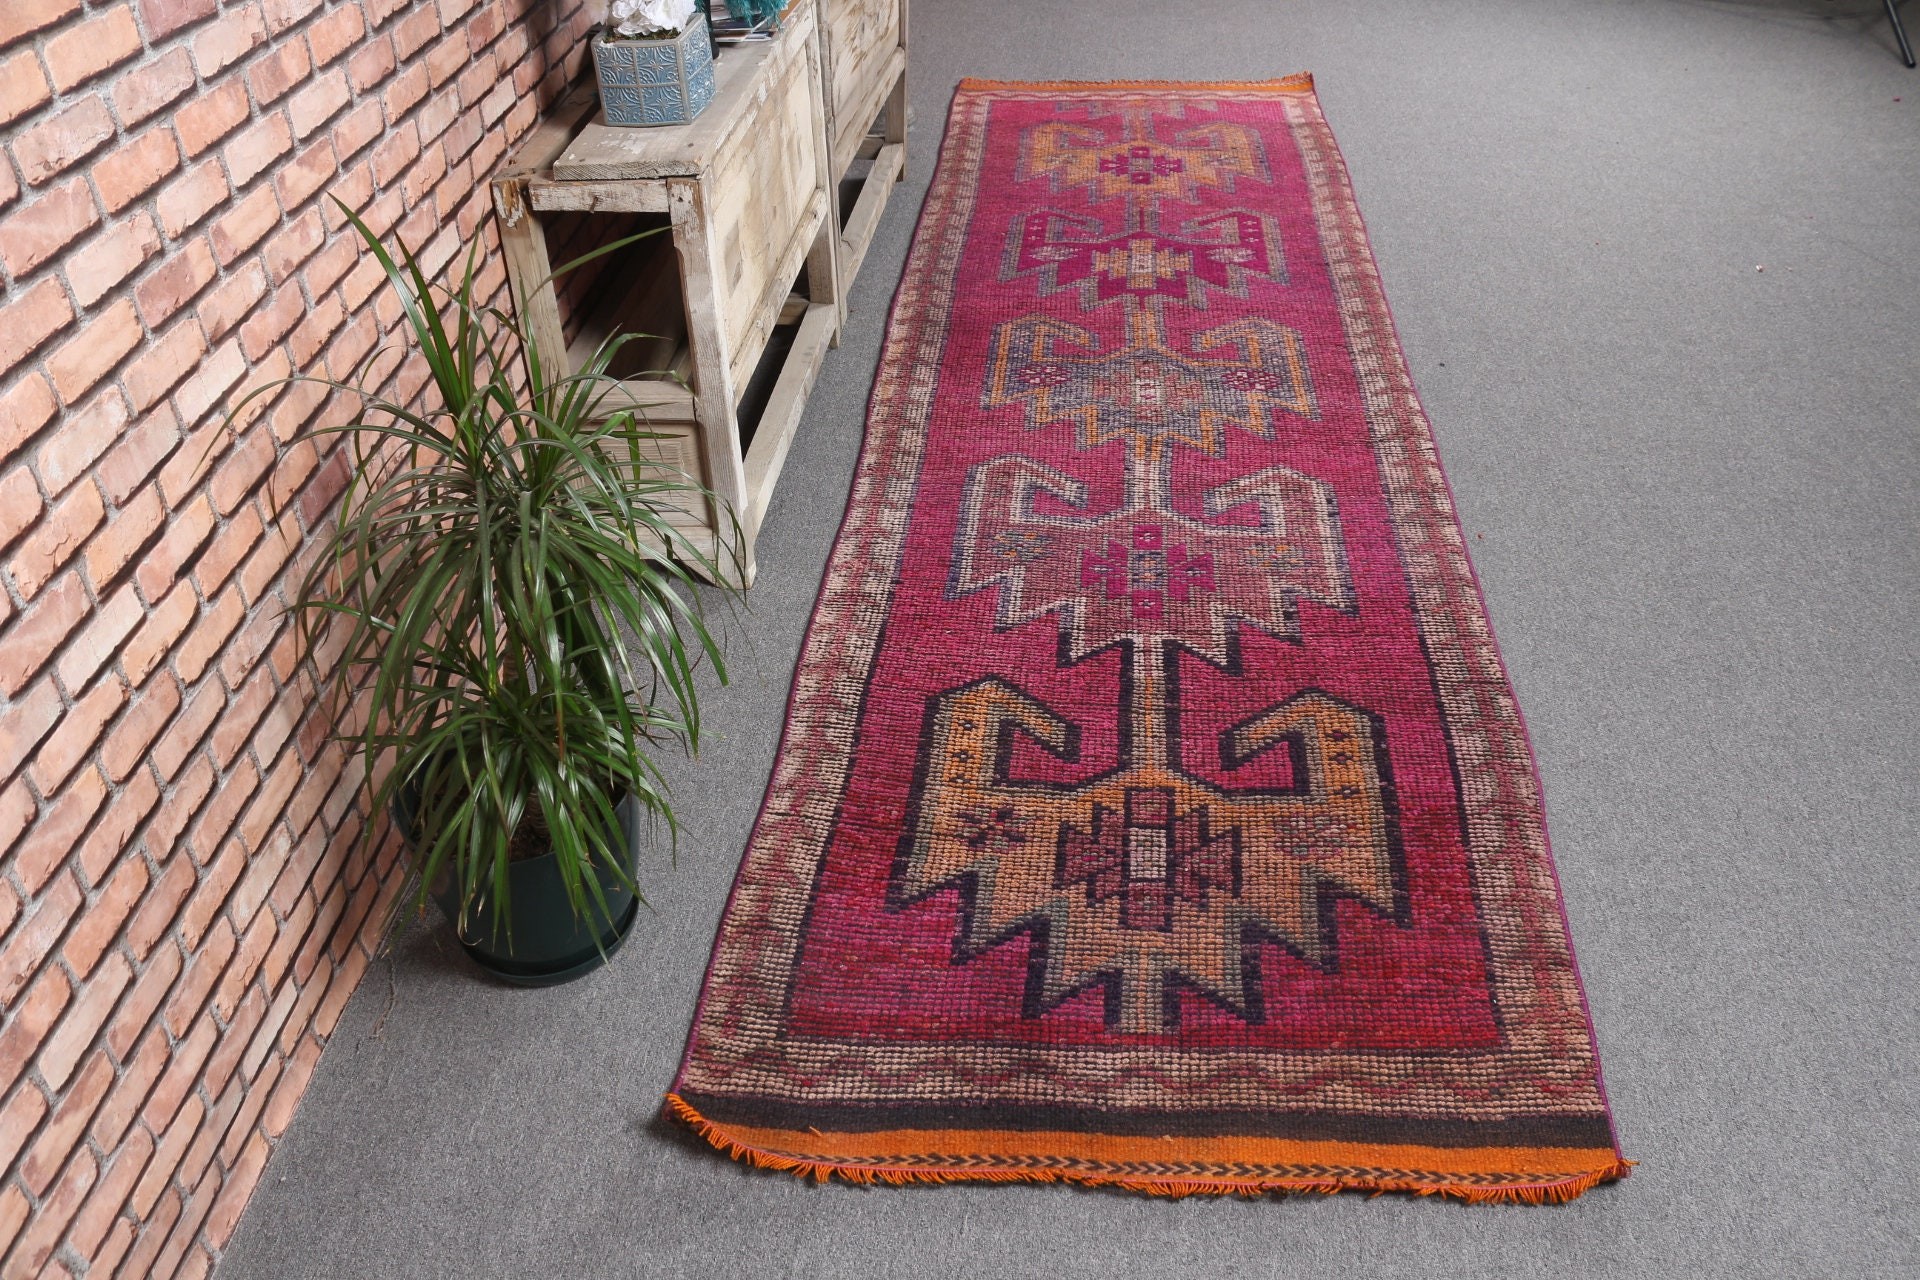 Antique Rug, Purple Wool Rug, Handmade Rug, Turkish Rug, Home Decor Rugs, Rugs for Hallway, Stair Rug, 3x10.5 ft Runner Rug, Vintage Rug